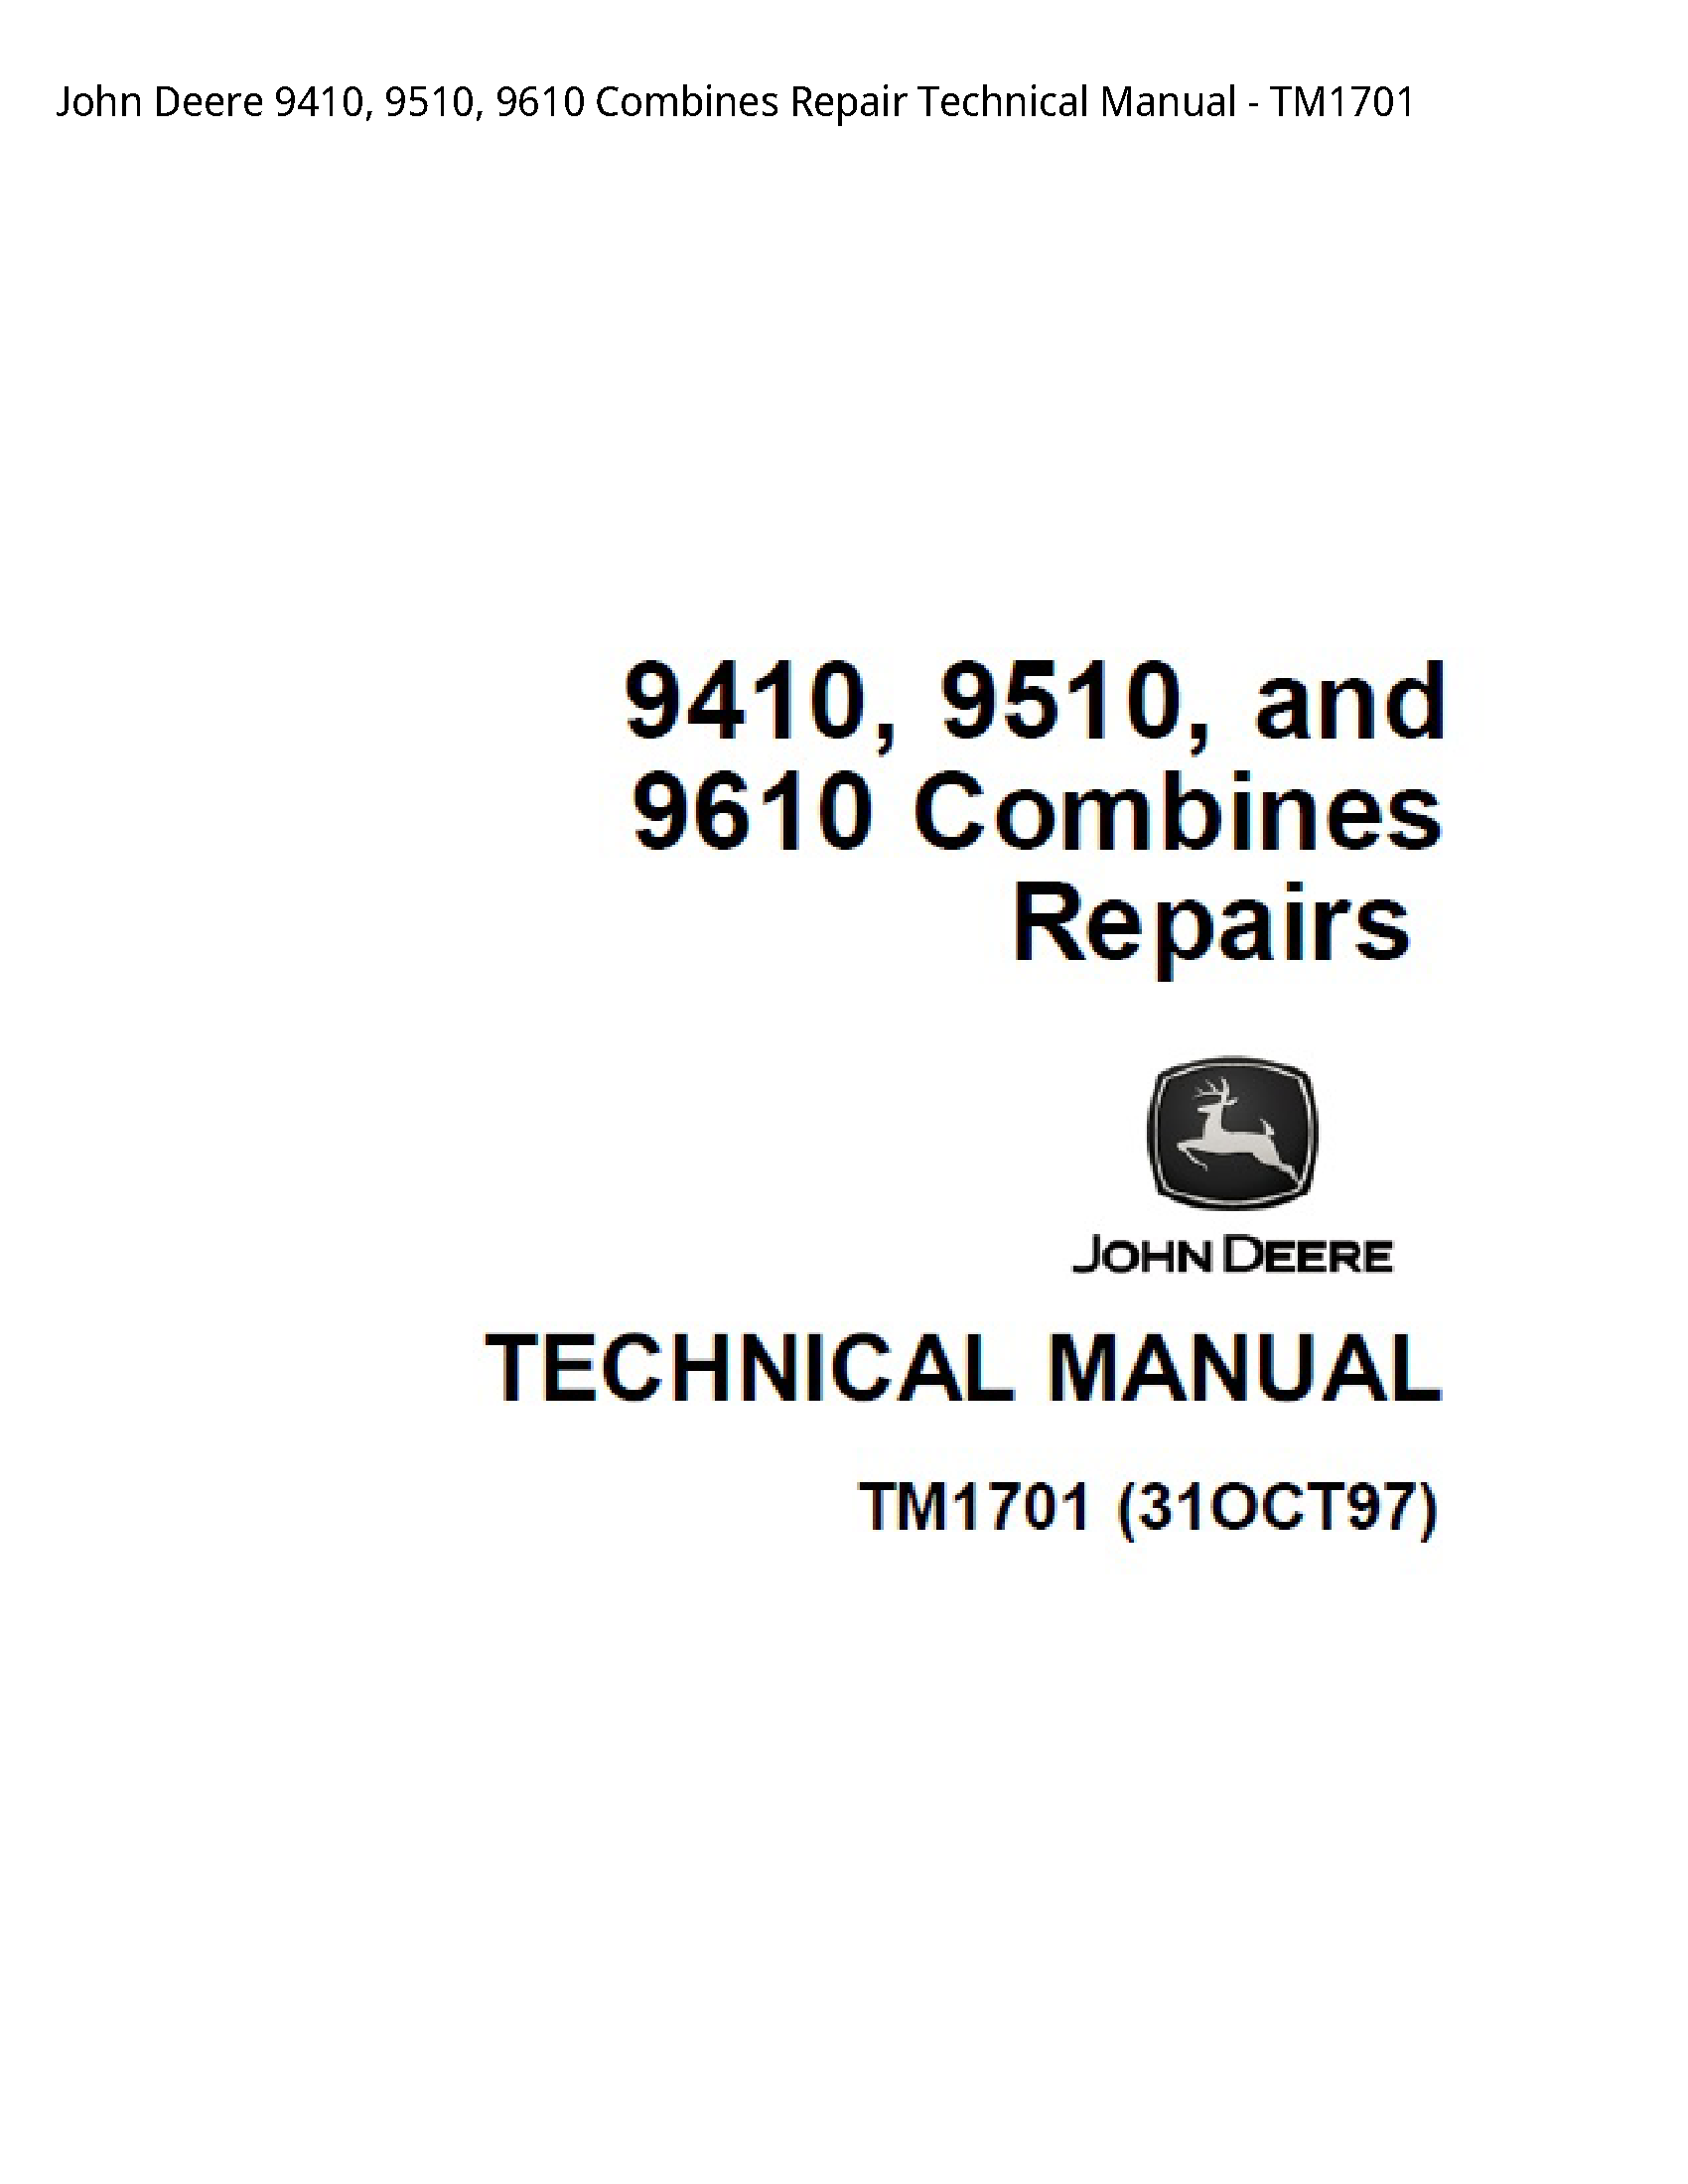 John Deere 9410 Combines Repair Technical manual